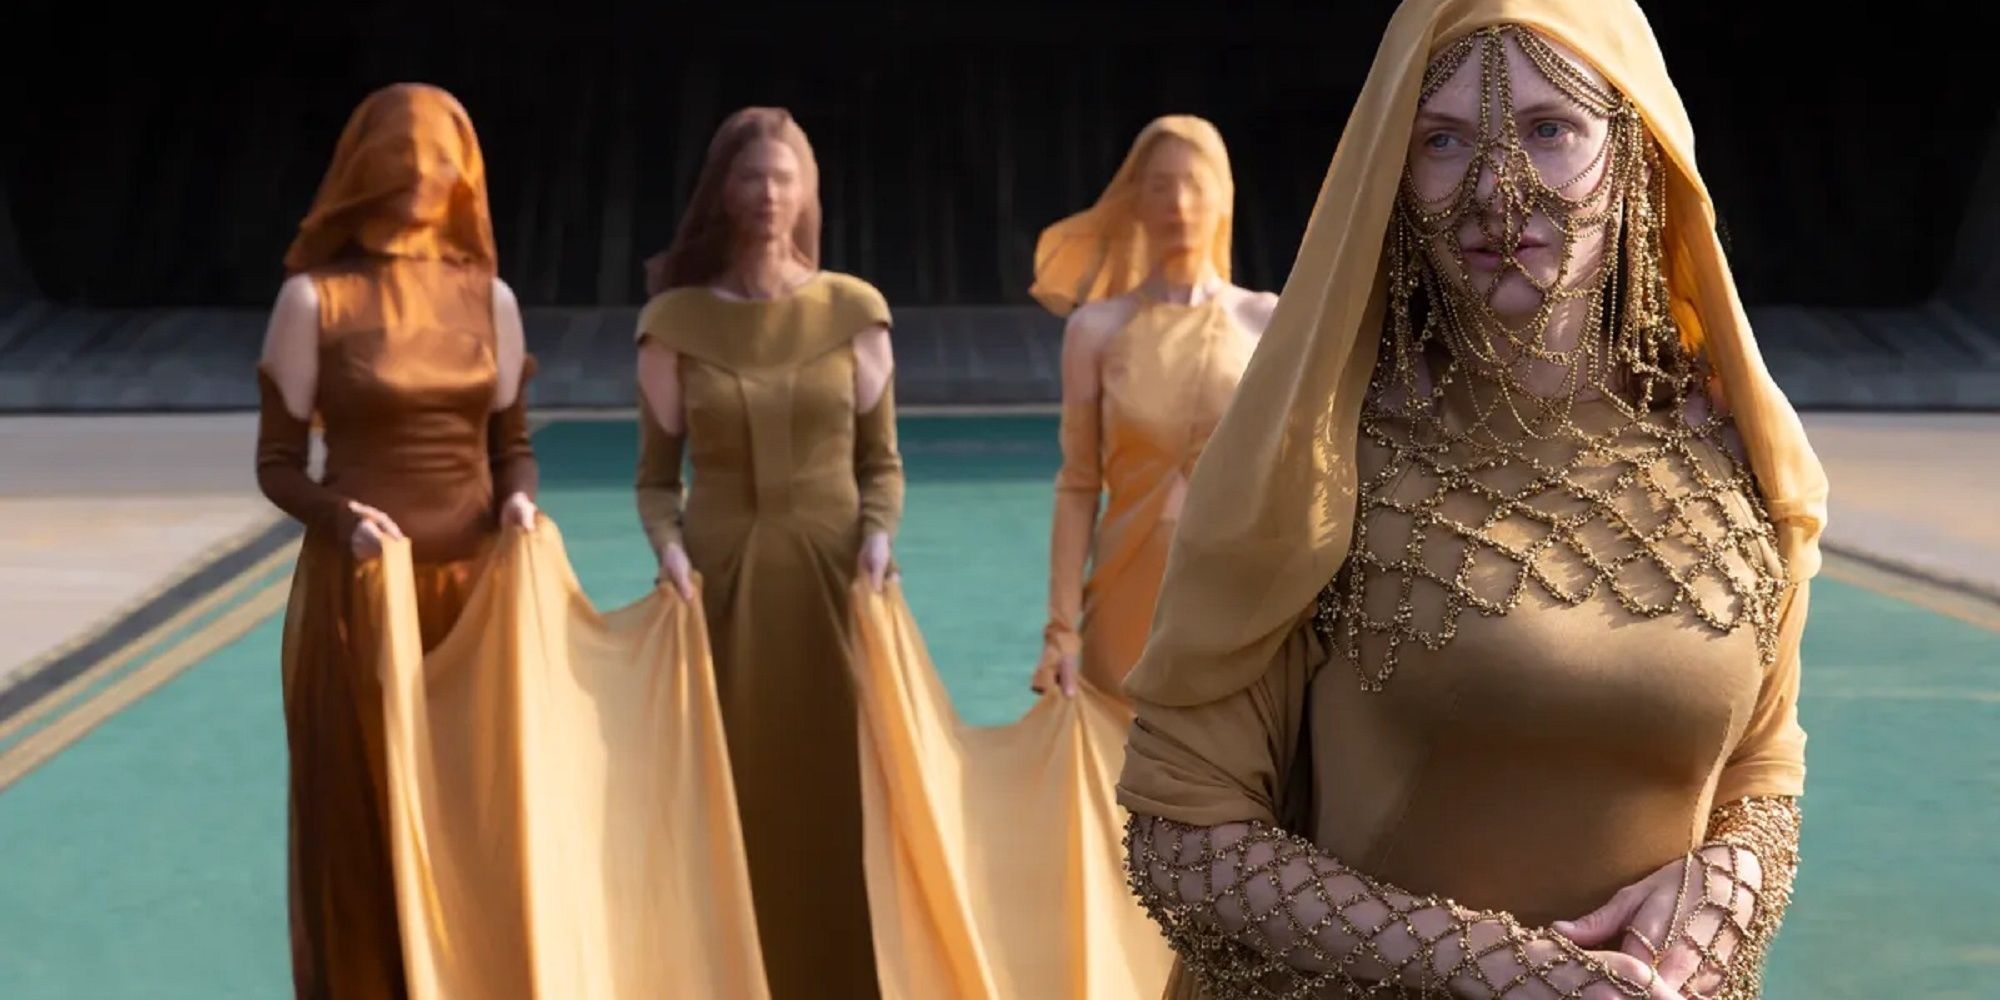 Lady Jessica en robe Bene Gesserit.